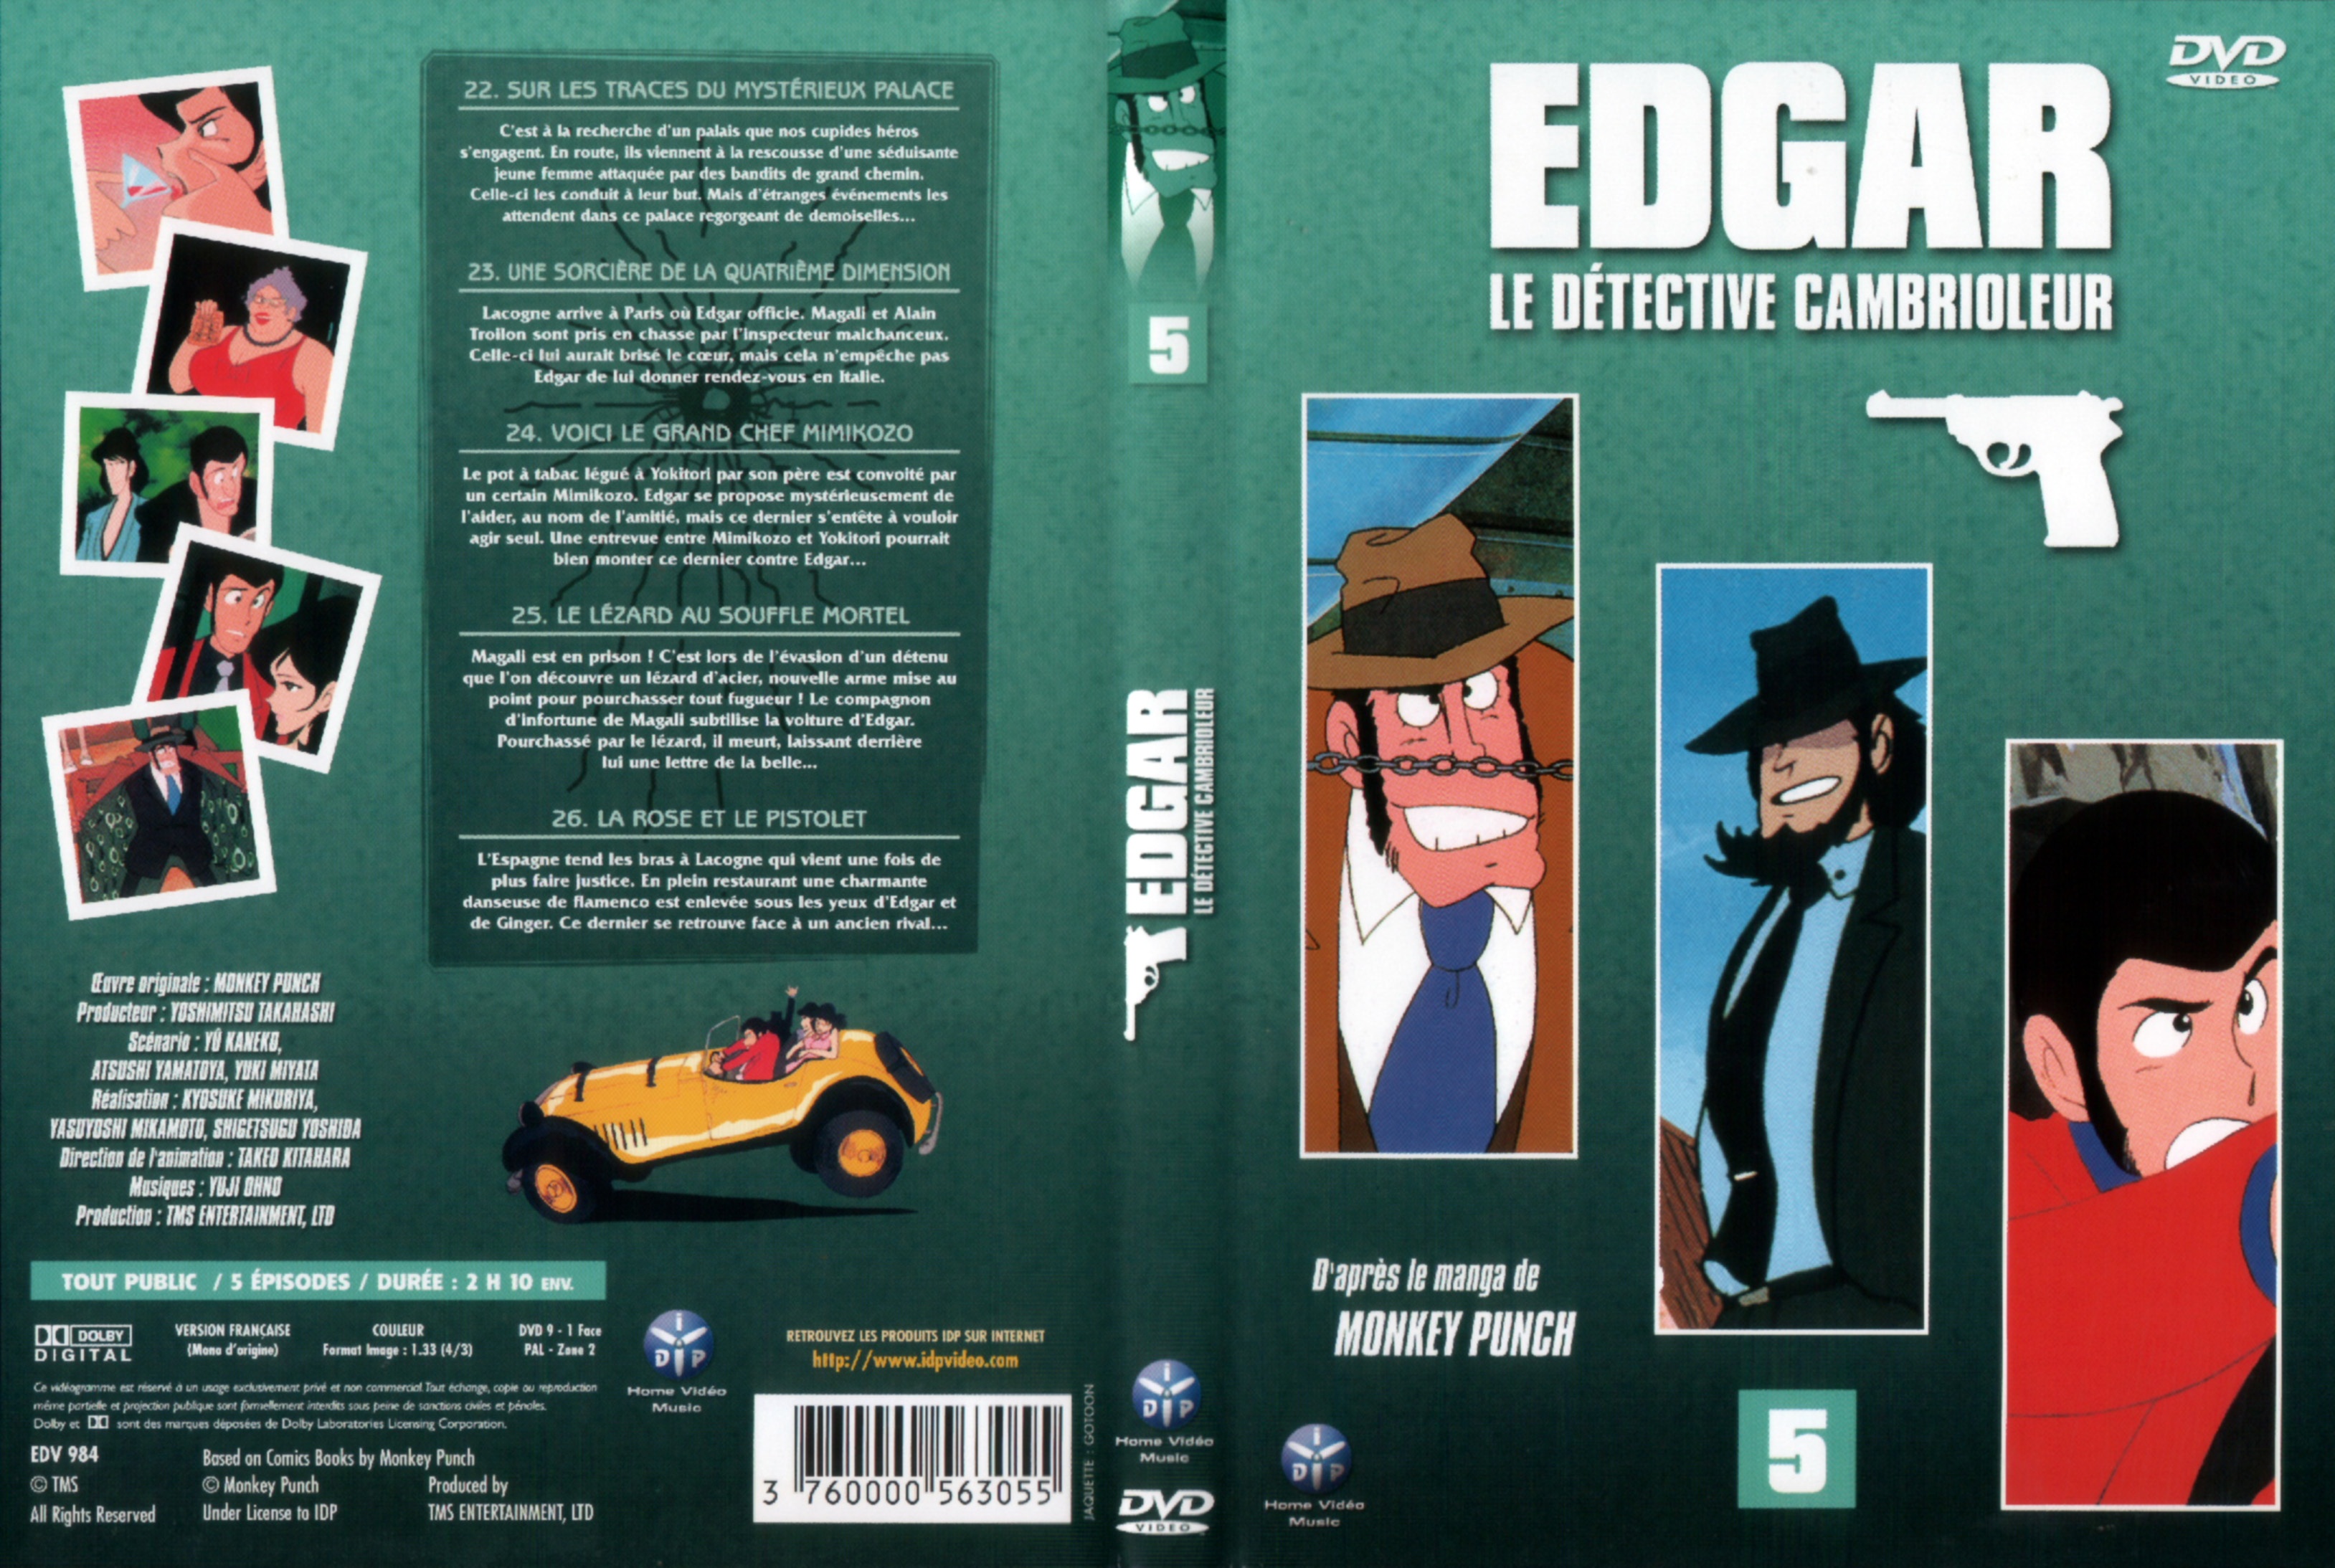 Jaquette DVD Edgar le detective cambrioleur DVD 05